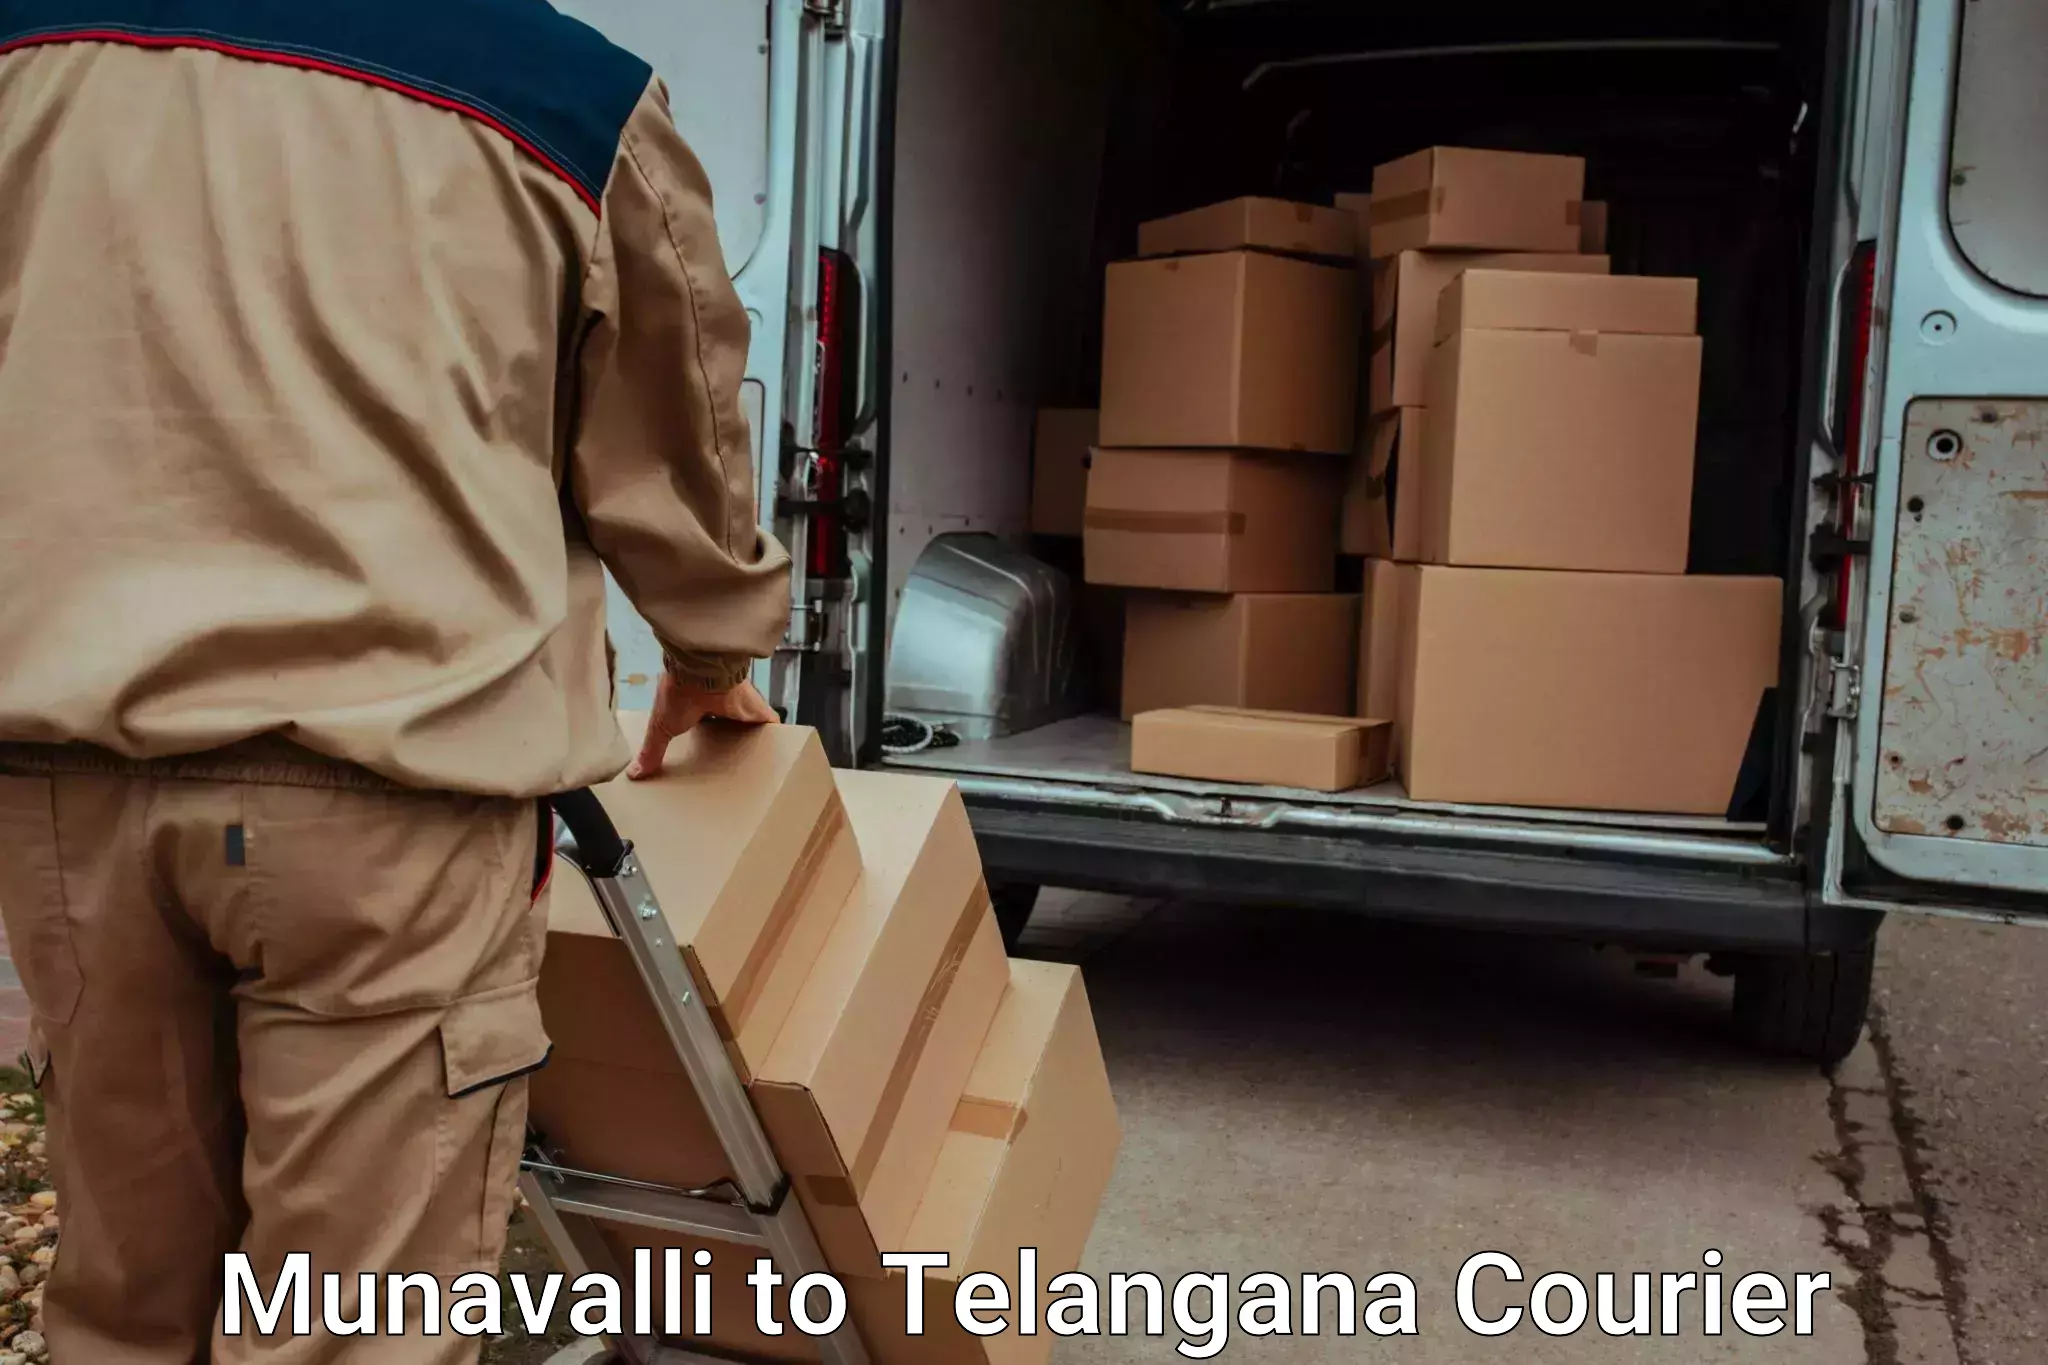 Urgent luggage shipment Munavalli to Dharmapuri Jagtial